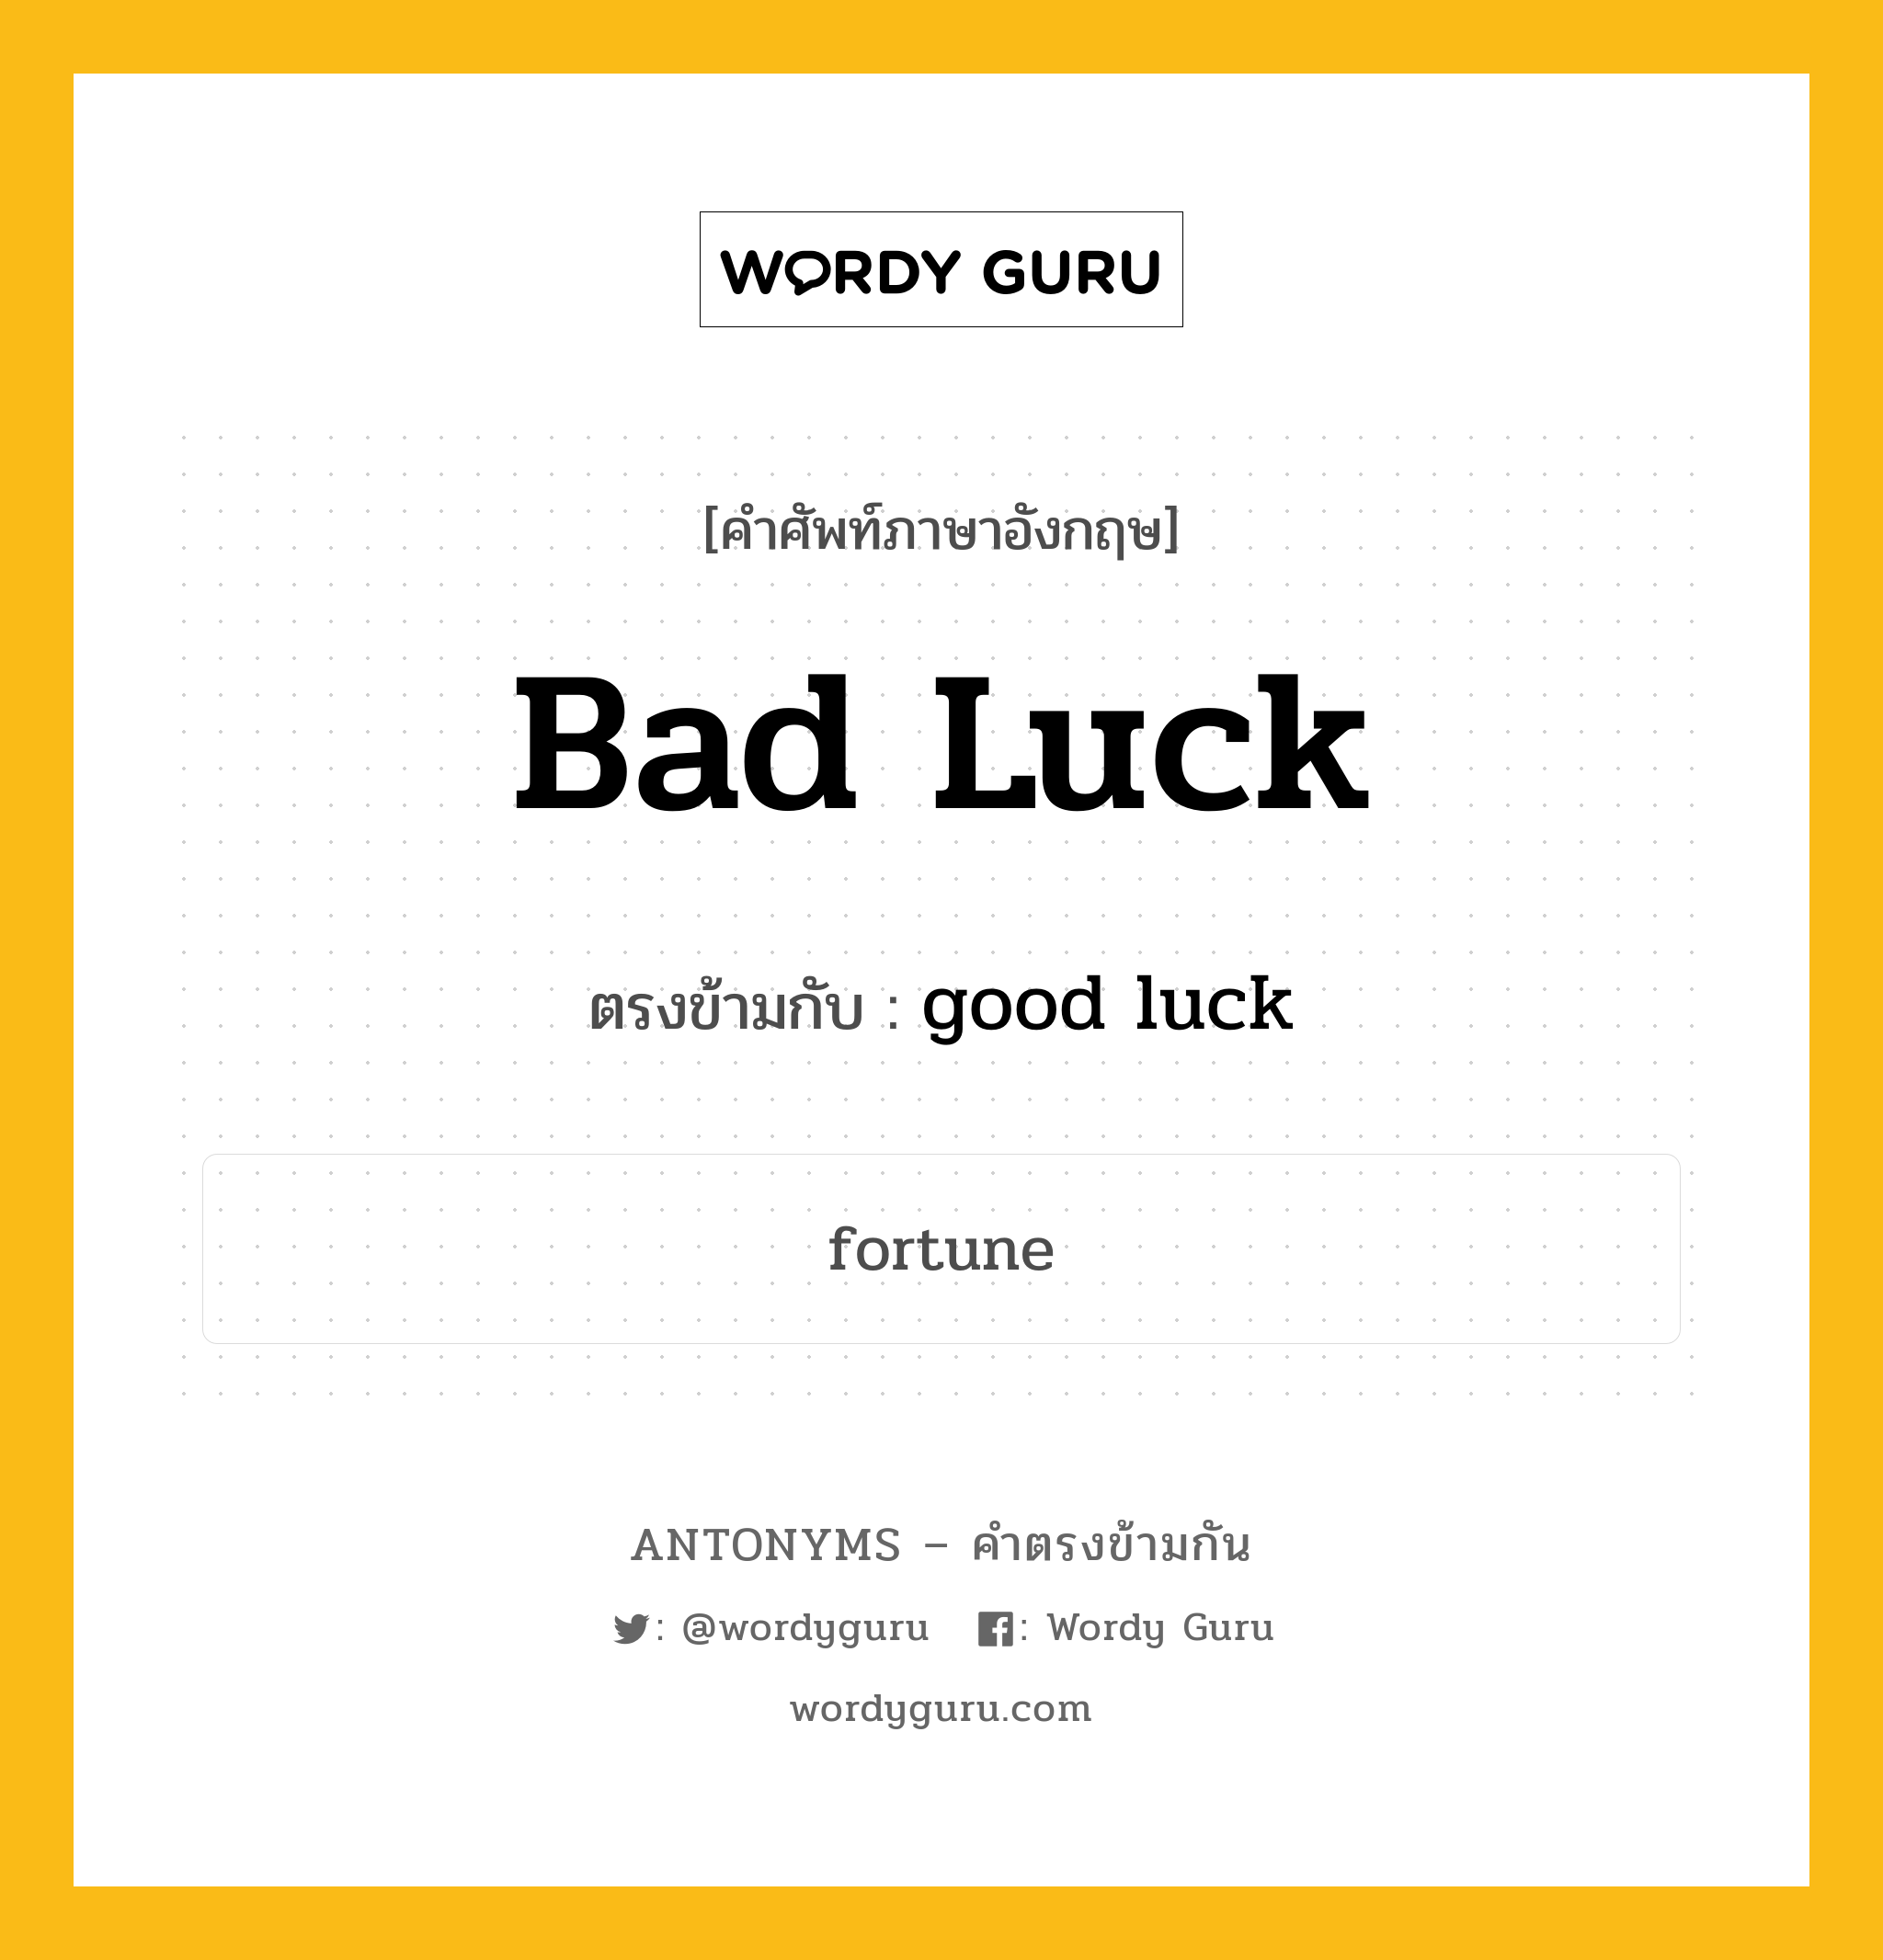 bad luck เป็นคำตรงข้ามกับคำไหนบ้าง?, คำศัพท์ภาษาอังกฤษ bad luck ตรงข้ามกับ good luck หมวด good luck